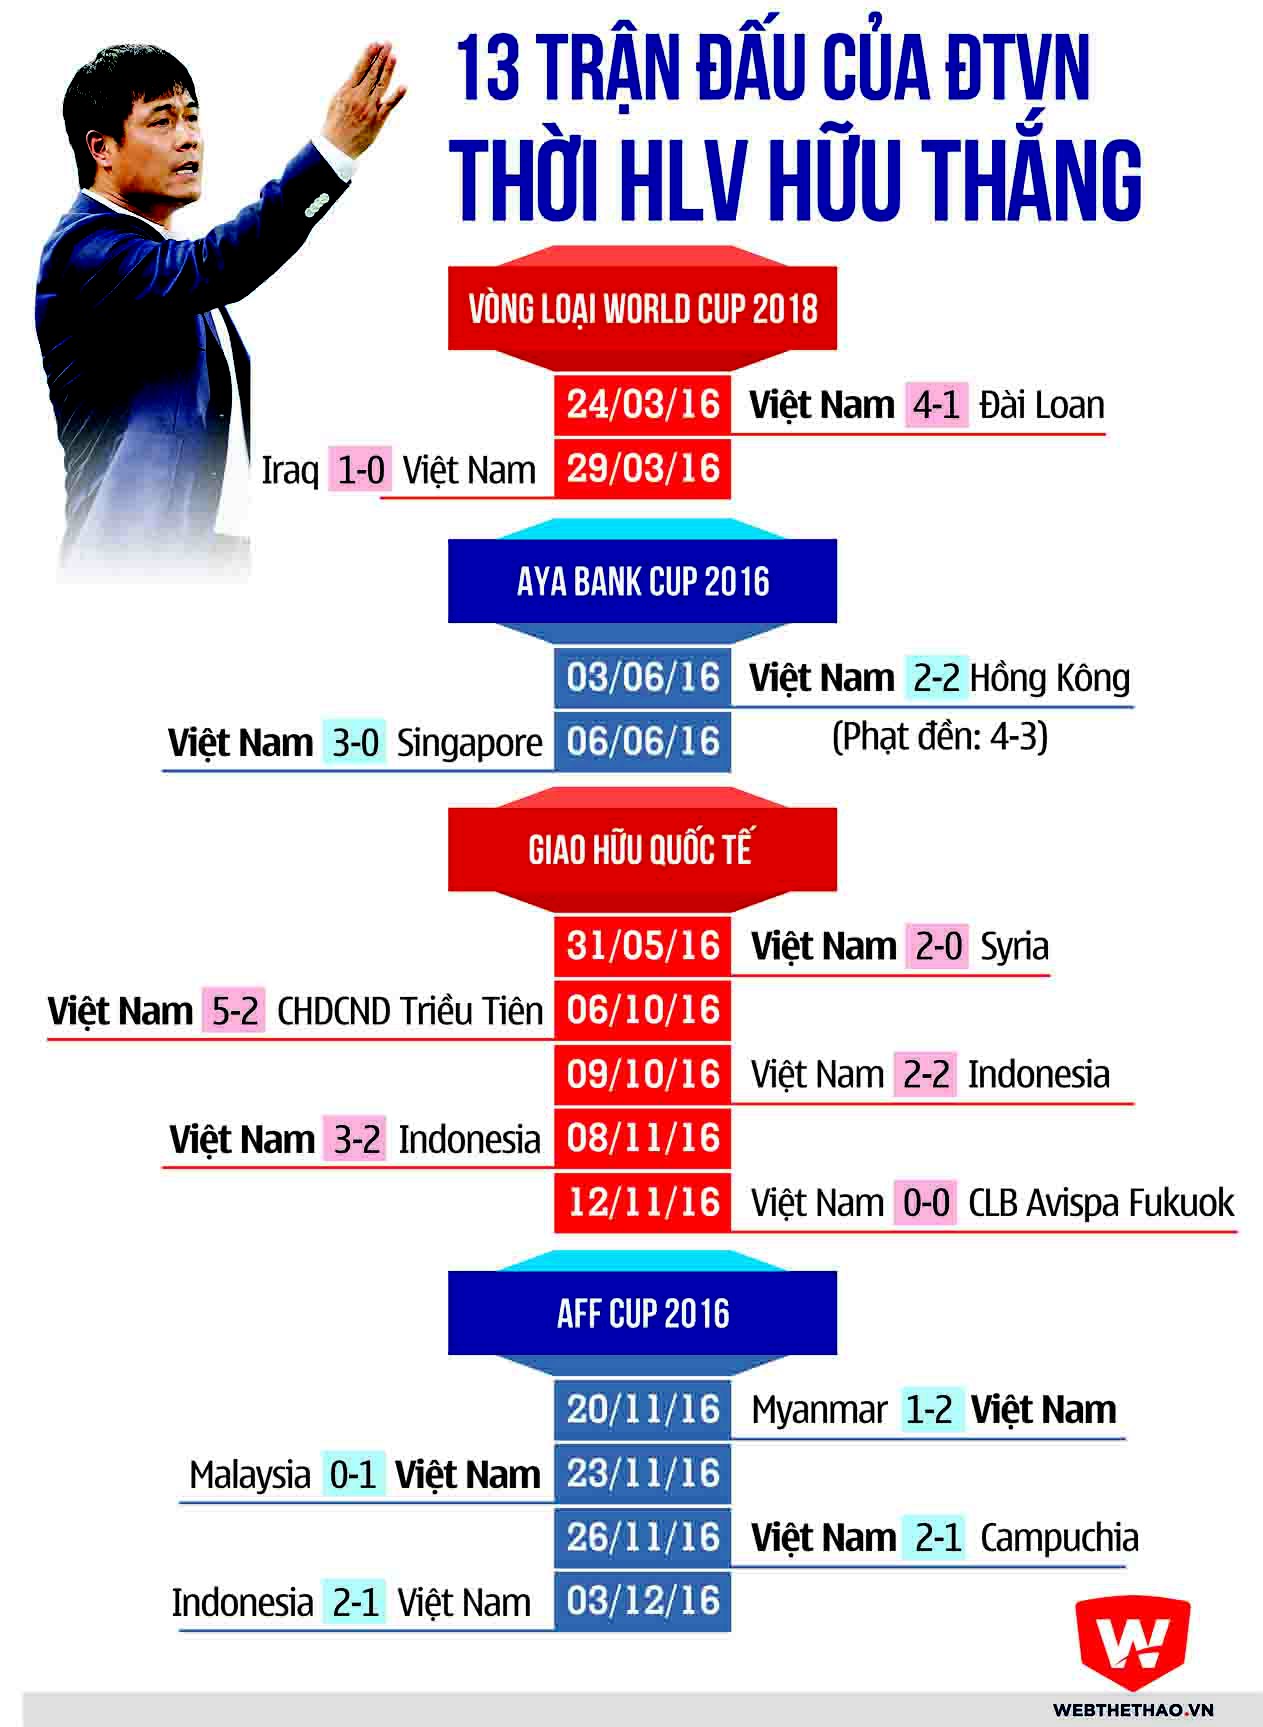 ĐTVN chỉ 1 lần duy nhất thắng 1-0 dưới thời HLV Hữu Thắng.